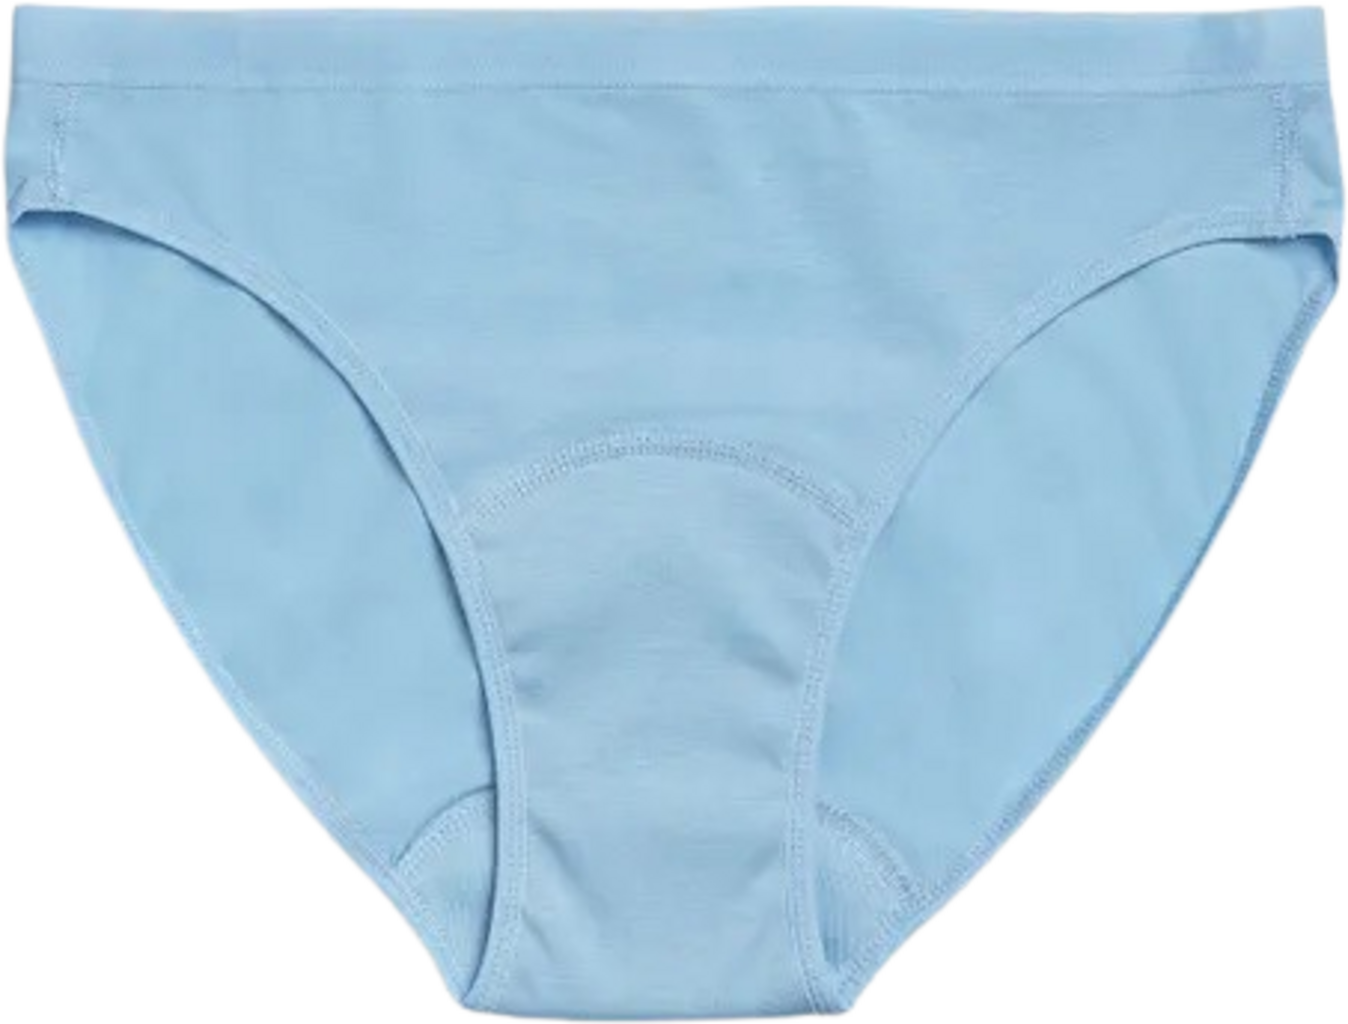  Teen Girls Period Underwear Cotton Soft Women Panties For  Teens Briefs XL